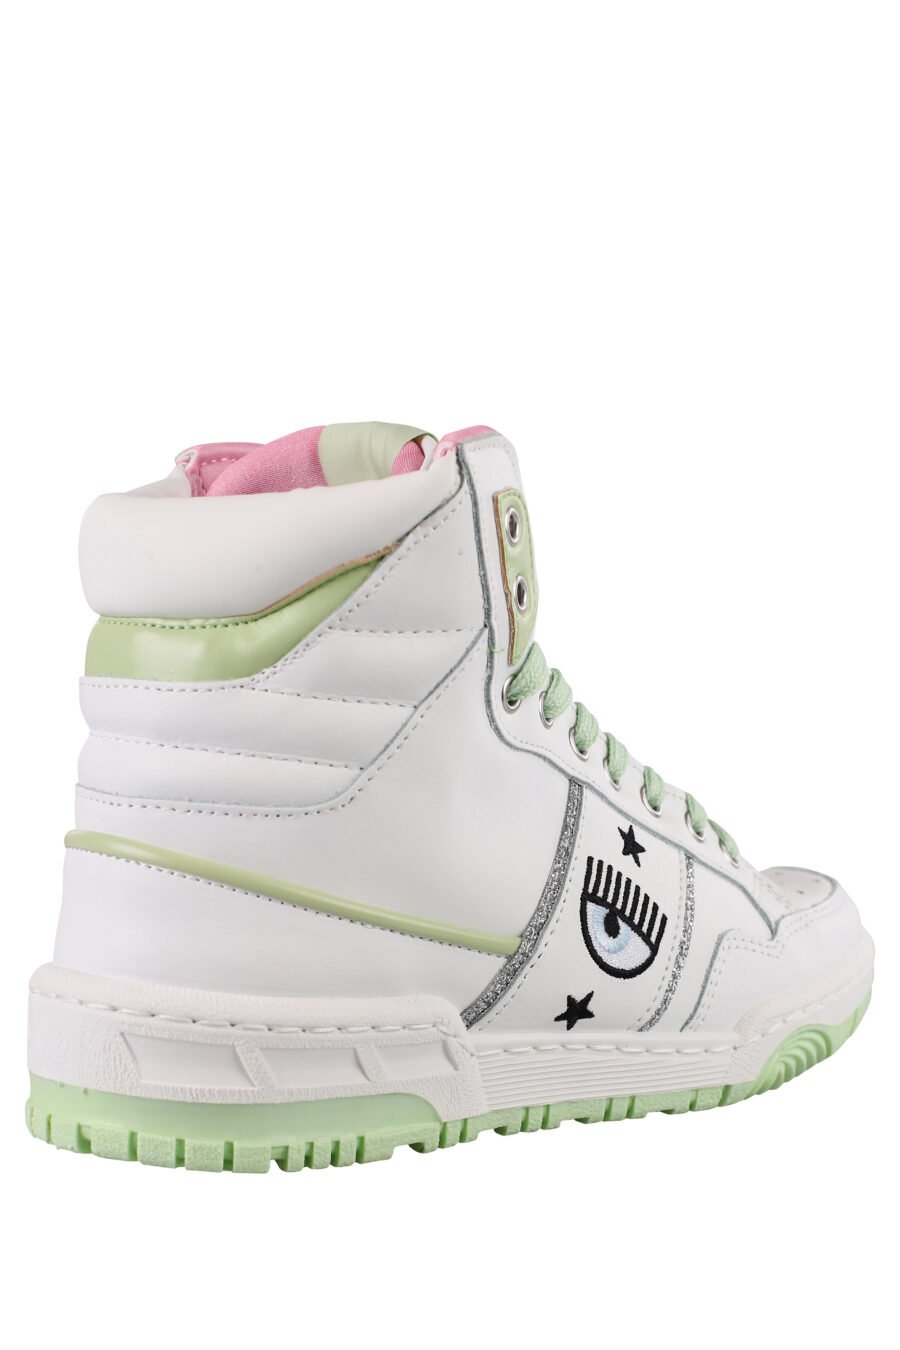 Zapatillas blancas y verde con logo ojo y detalles rosas - IMG 1169